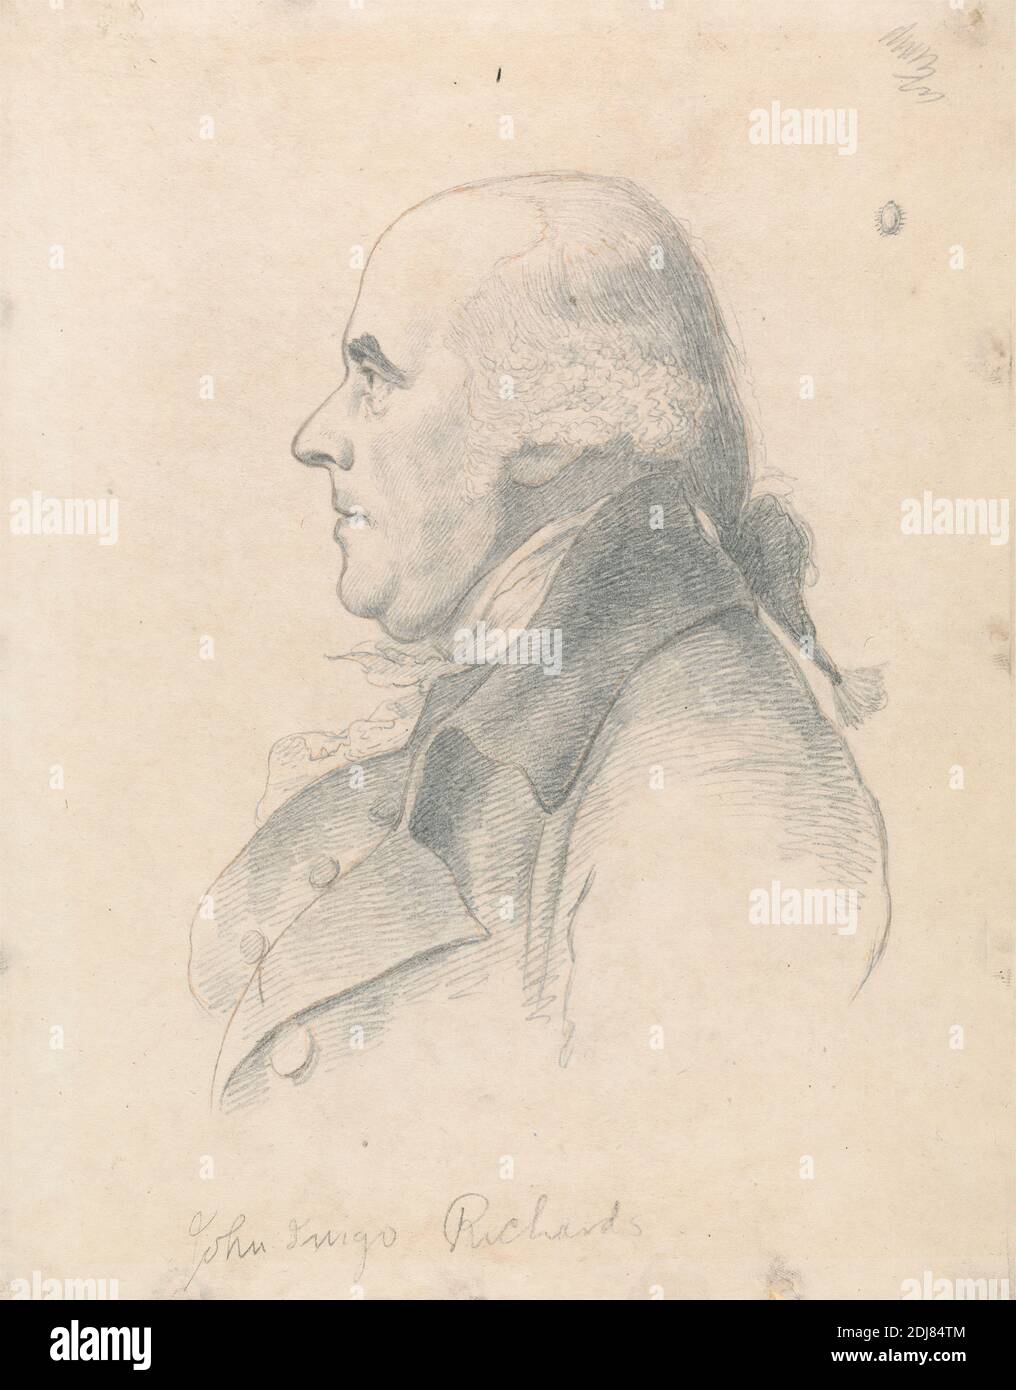 John Inigo Richards, William Daniell, 1769–1837, britannique, d'après George Dance RA, 1741–1825, britannique, entre 1808 et 1814, Graphite et craie rouge sur du papier vélin moyen, légèrement texturé, crème monté sur du papier légèrement épais, modérément texturé, beige, feuille : 9 7/8 x 7 3/4 pouces (25.1 x 19.7 cm), artiste, manteau, collier, cravat, peintre paysagiste, homme, portrait, profil (figure), cravate-perruque Banque D'Images